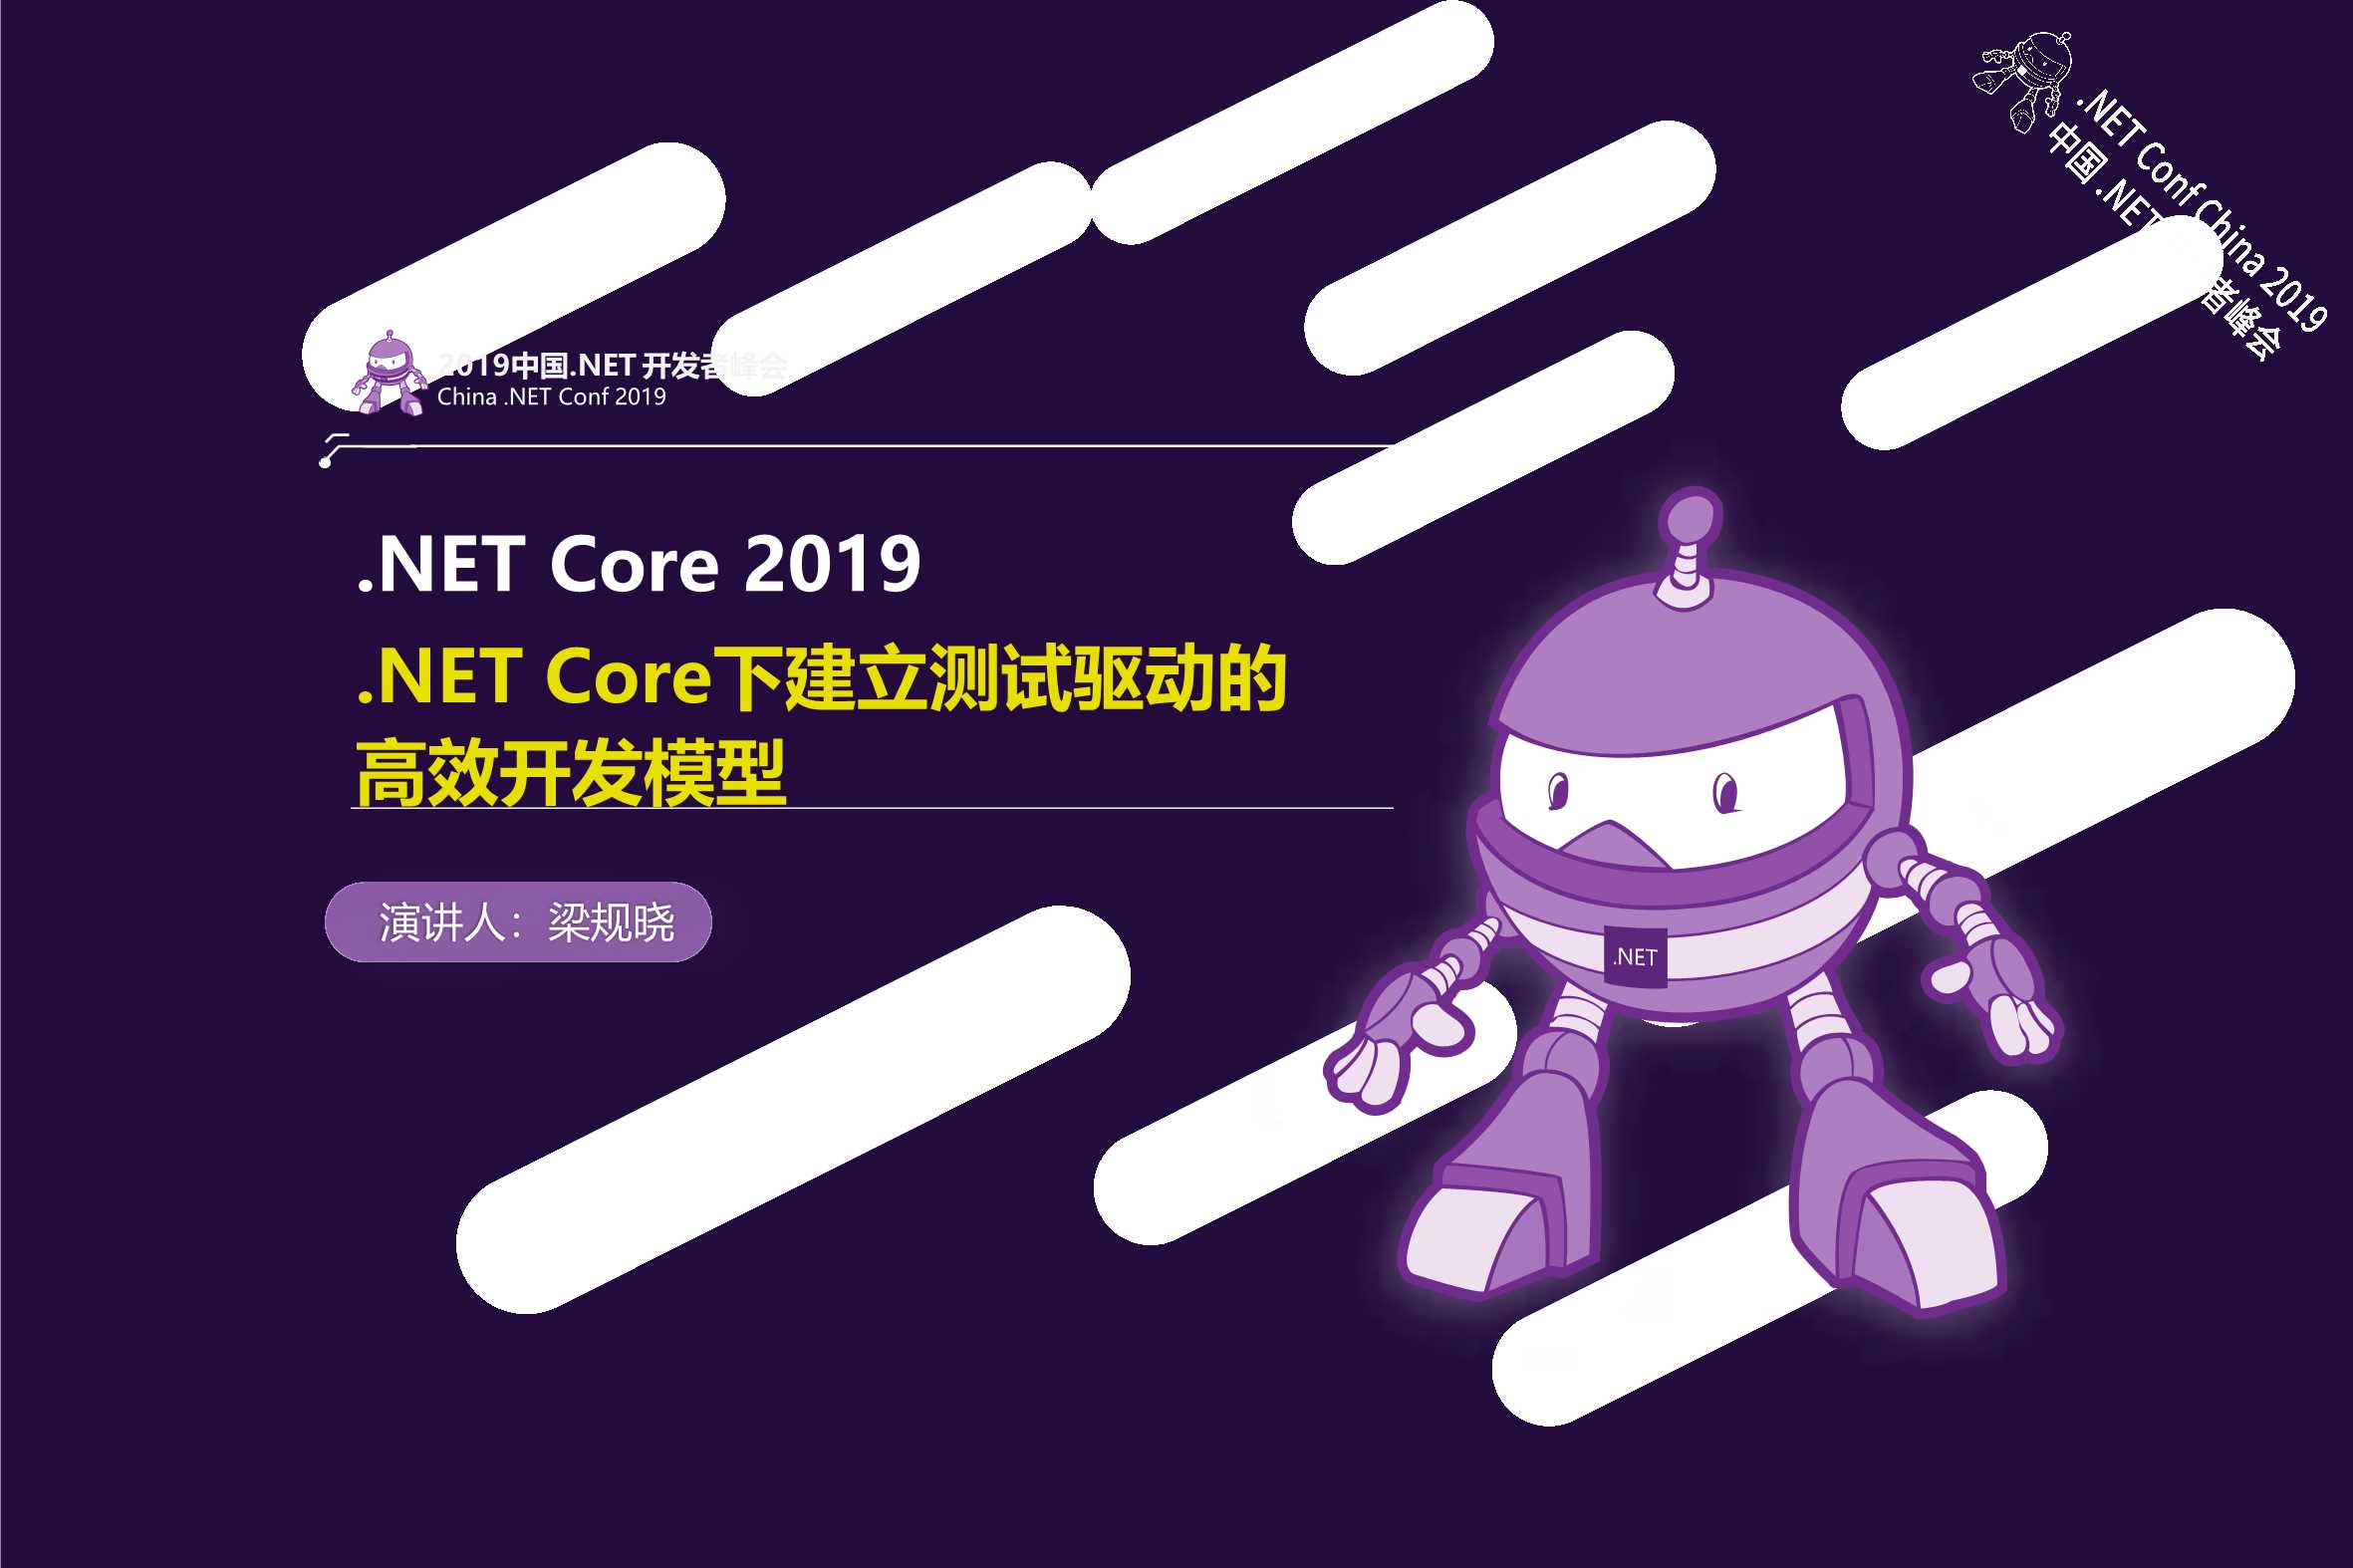 梁规晓-.NET Core下建立测试驱动的高效开发模型-2019-14页